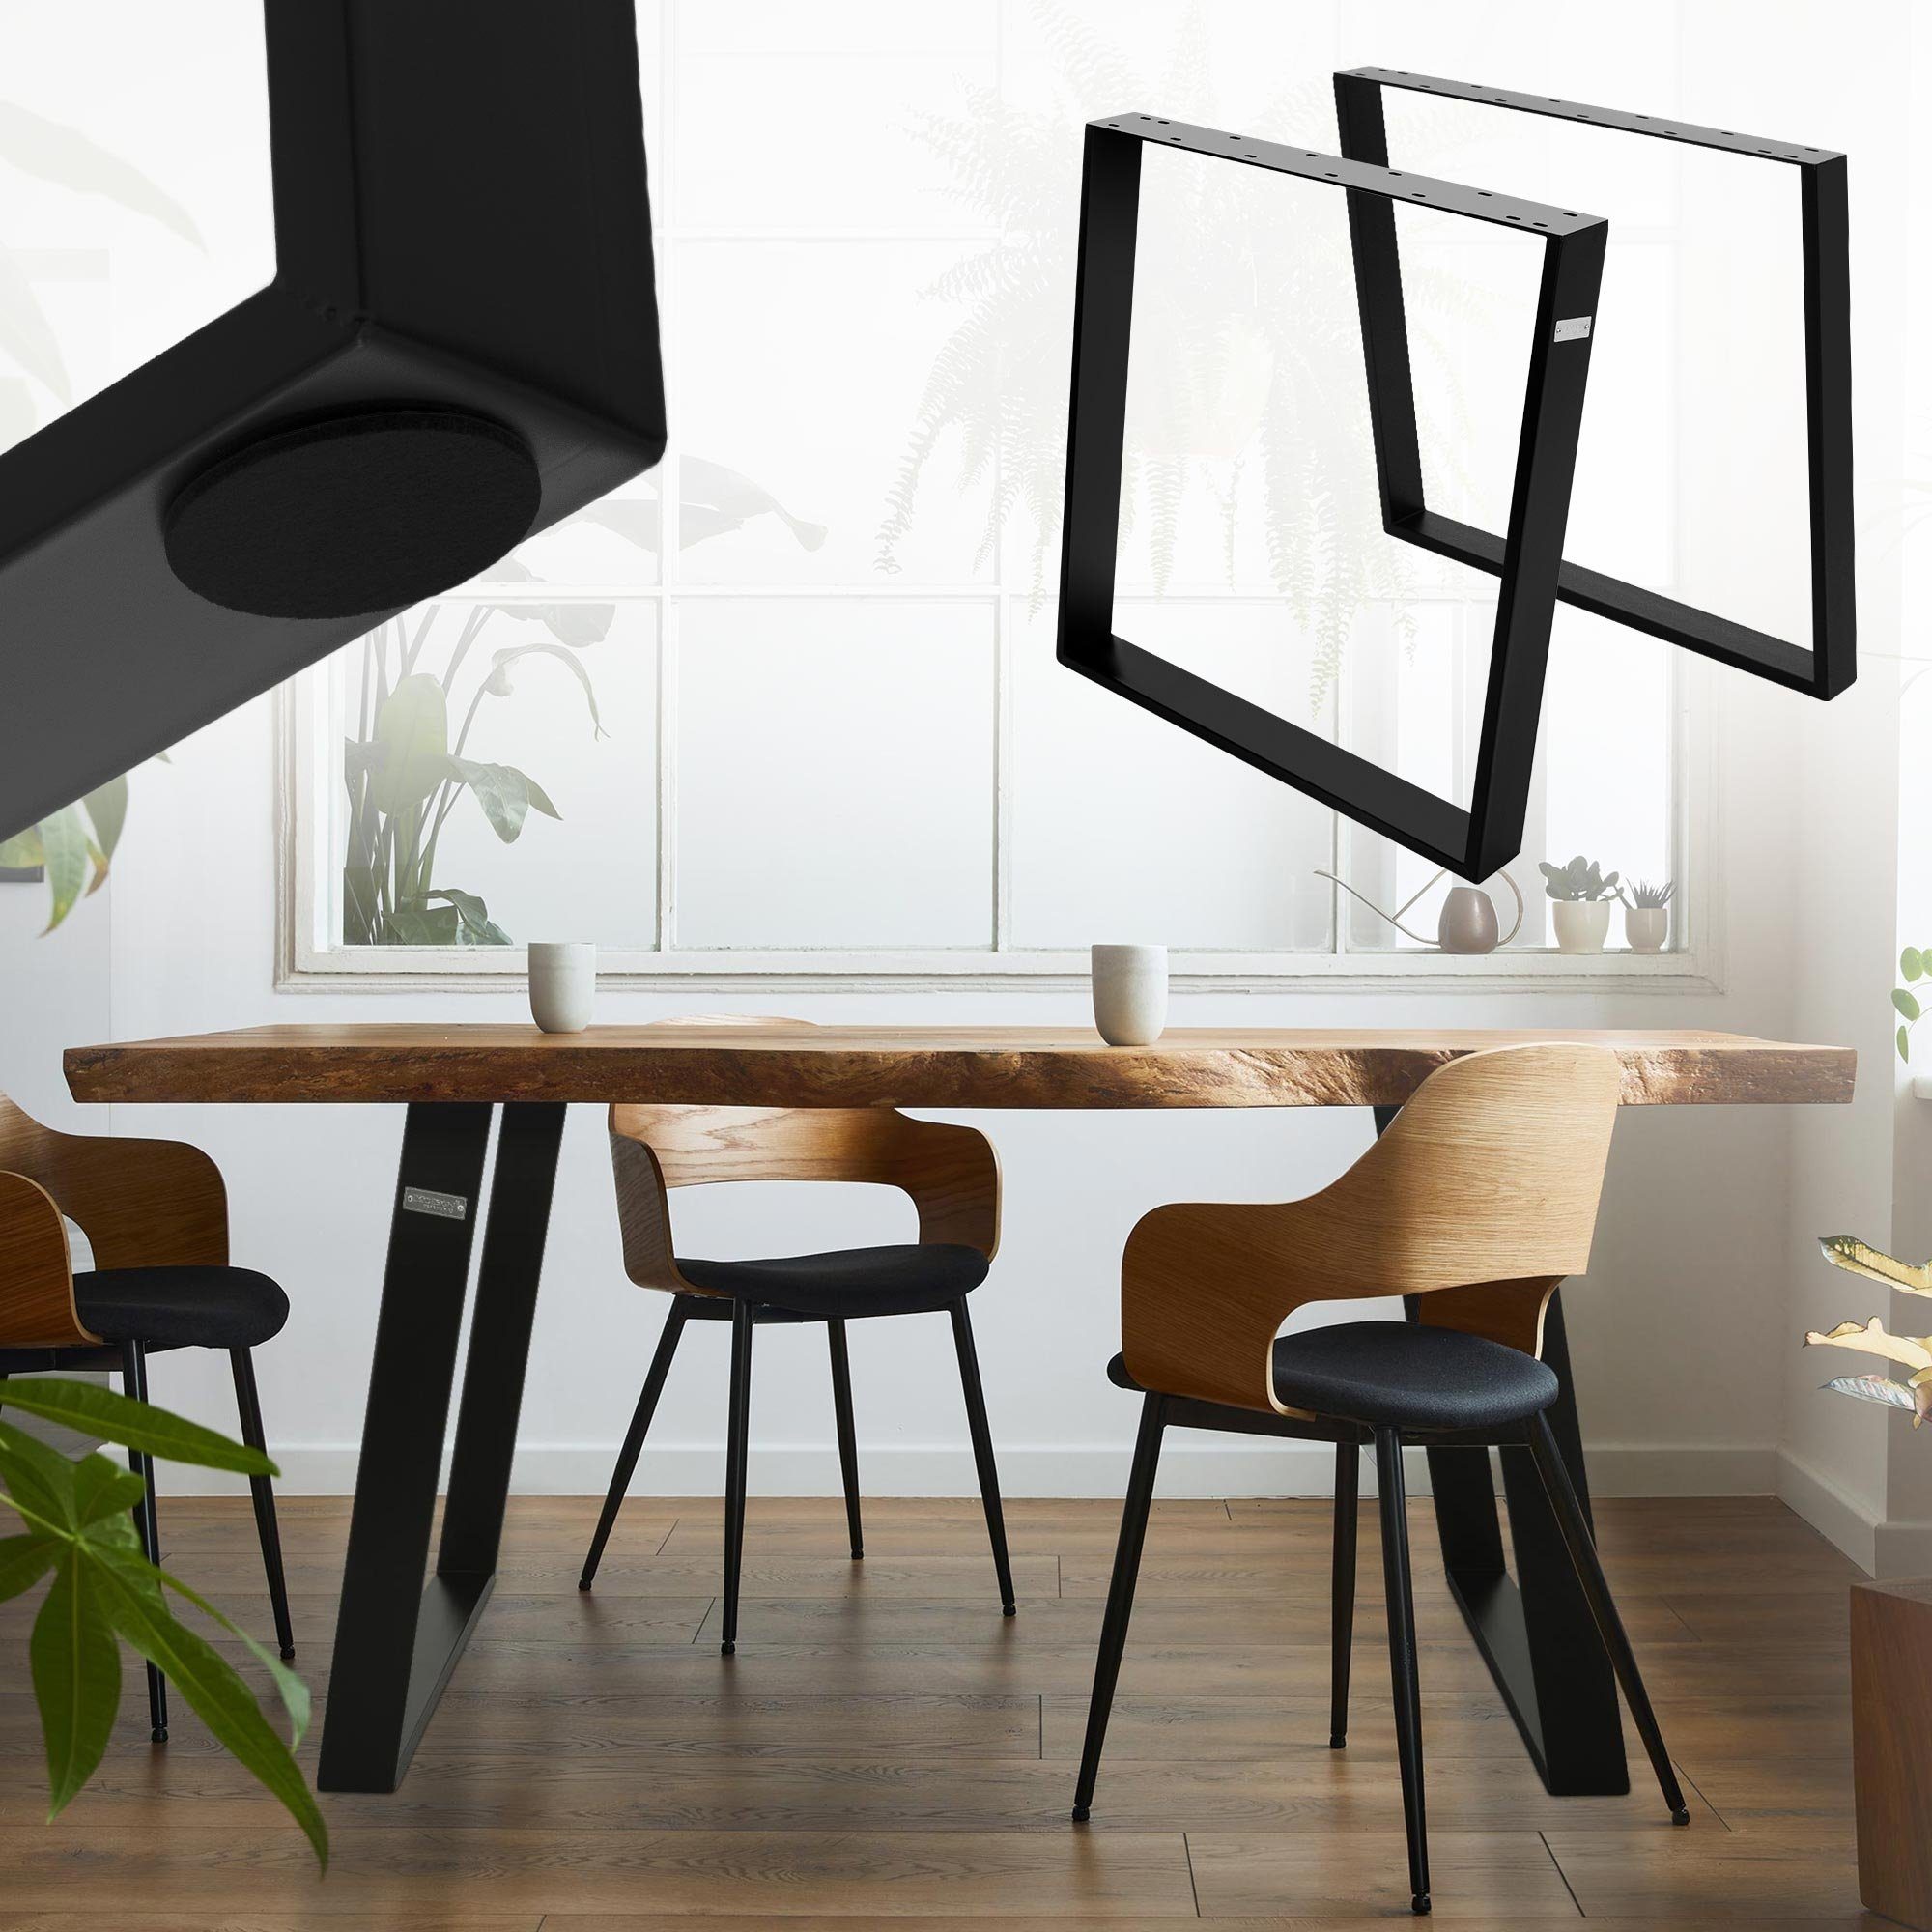 ML-DESIGN Tischbein Möbelkufen Tischuntergestell Möbelfüße für Esstisch/Schreibtisch, 2er Set 80GRAD Neigung 75x72cm Schwarz Schräg Metall | Tischbeine